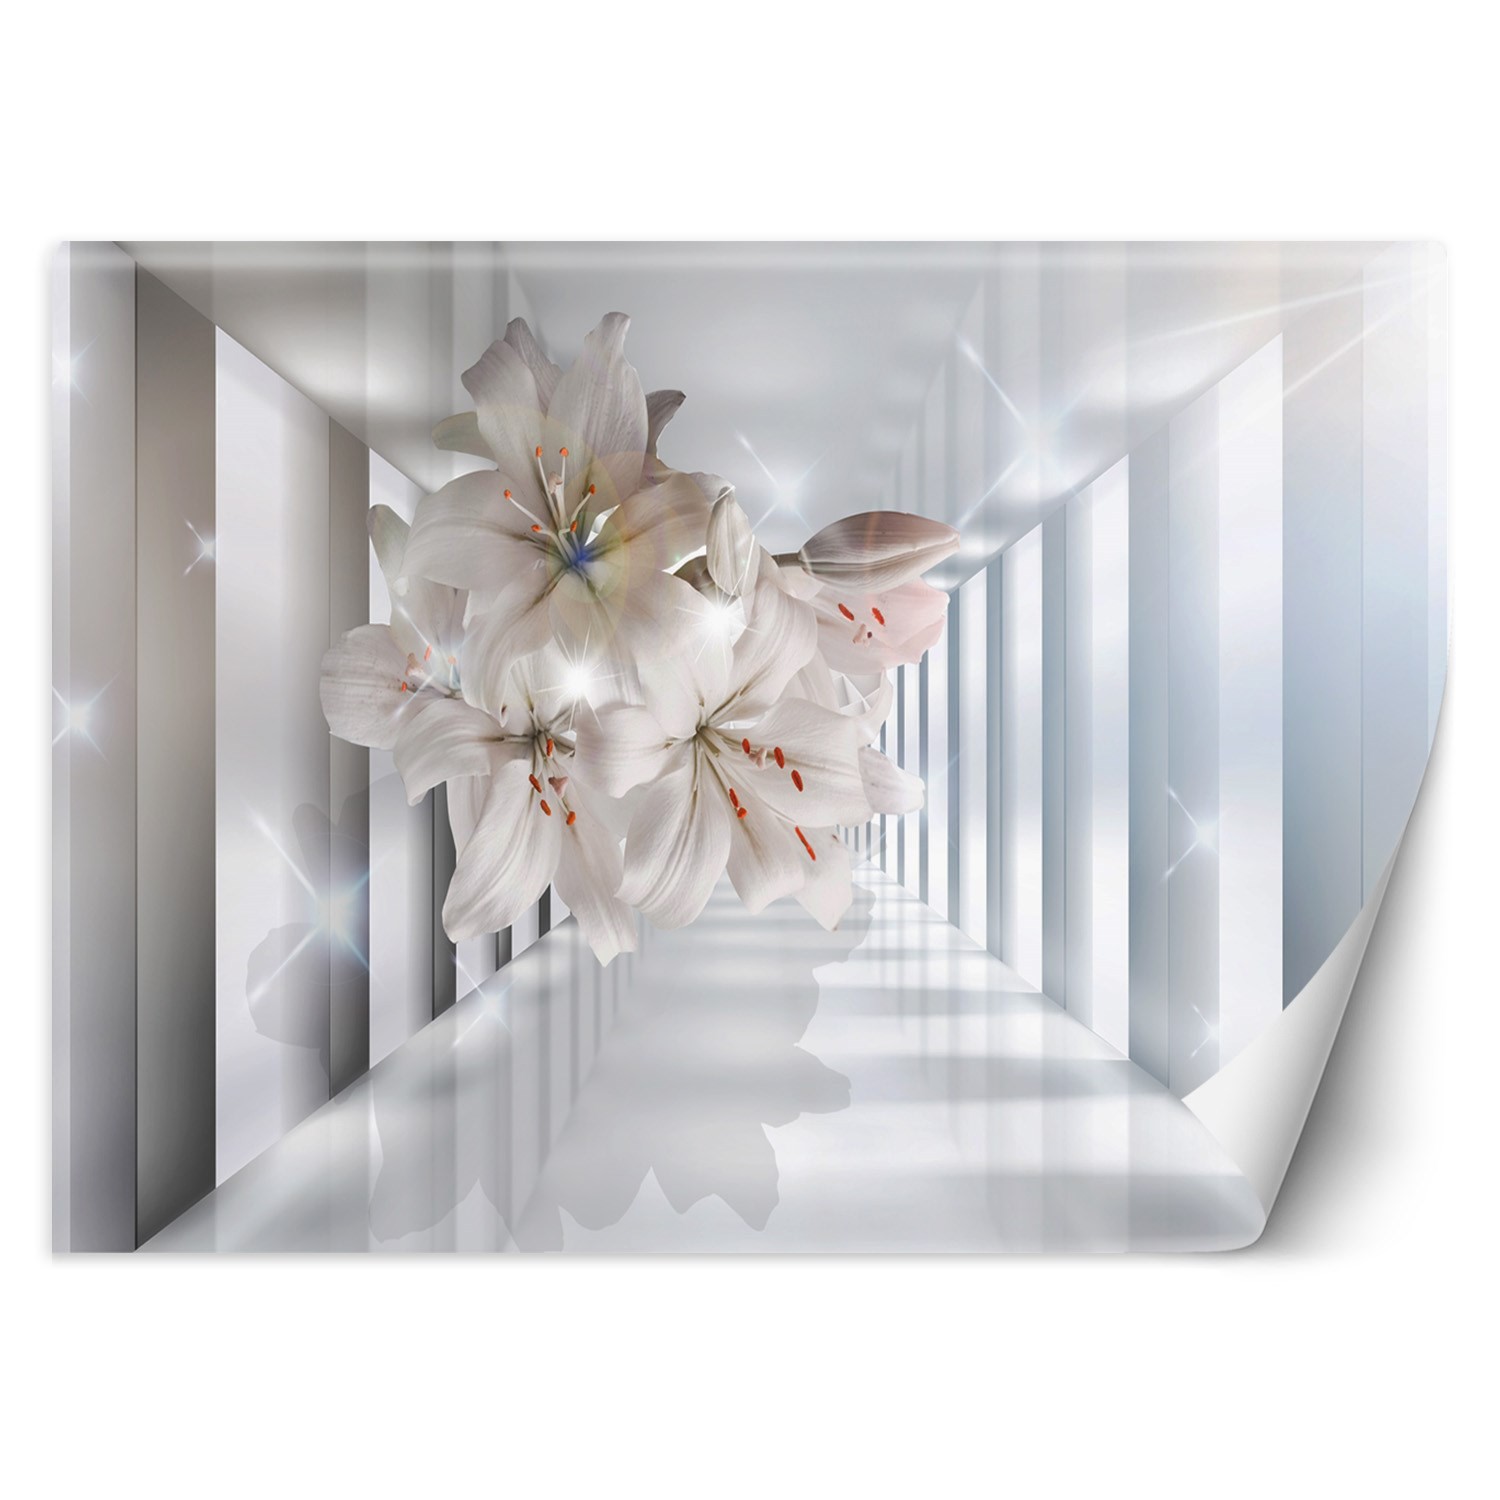 Trend24 – Behang – Bloemen In De Corridor 3D – Behangpapier – Fotobehang 3D – Behang Woonkamer – 400x280x2 cm – Incl. behanglijm